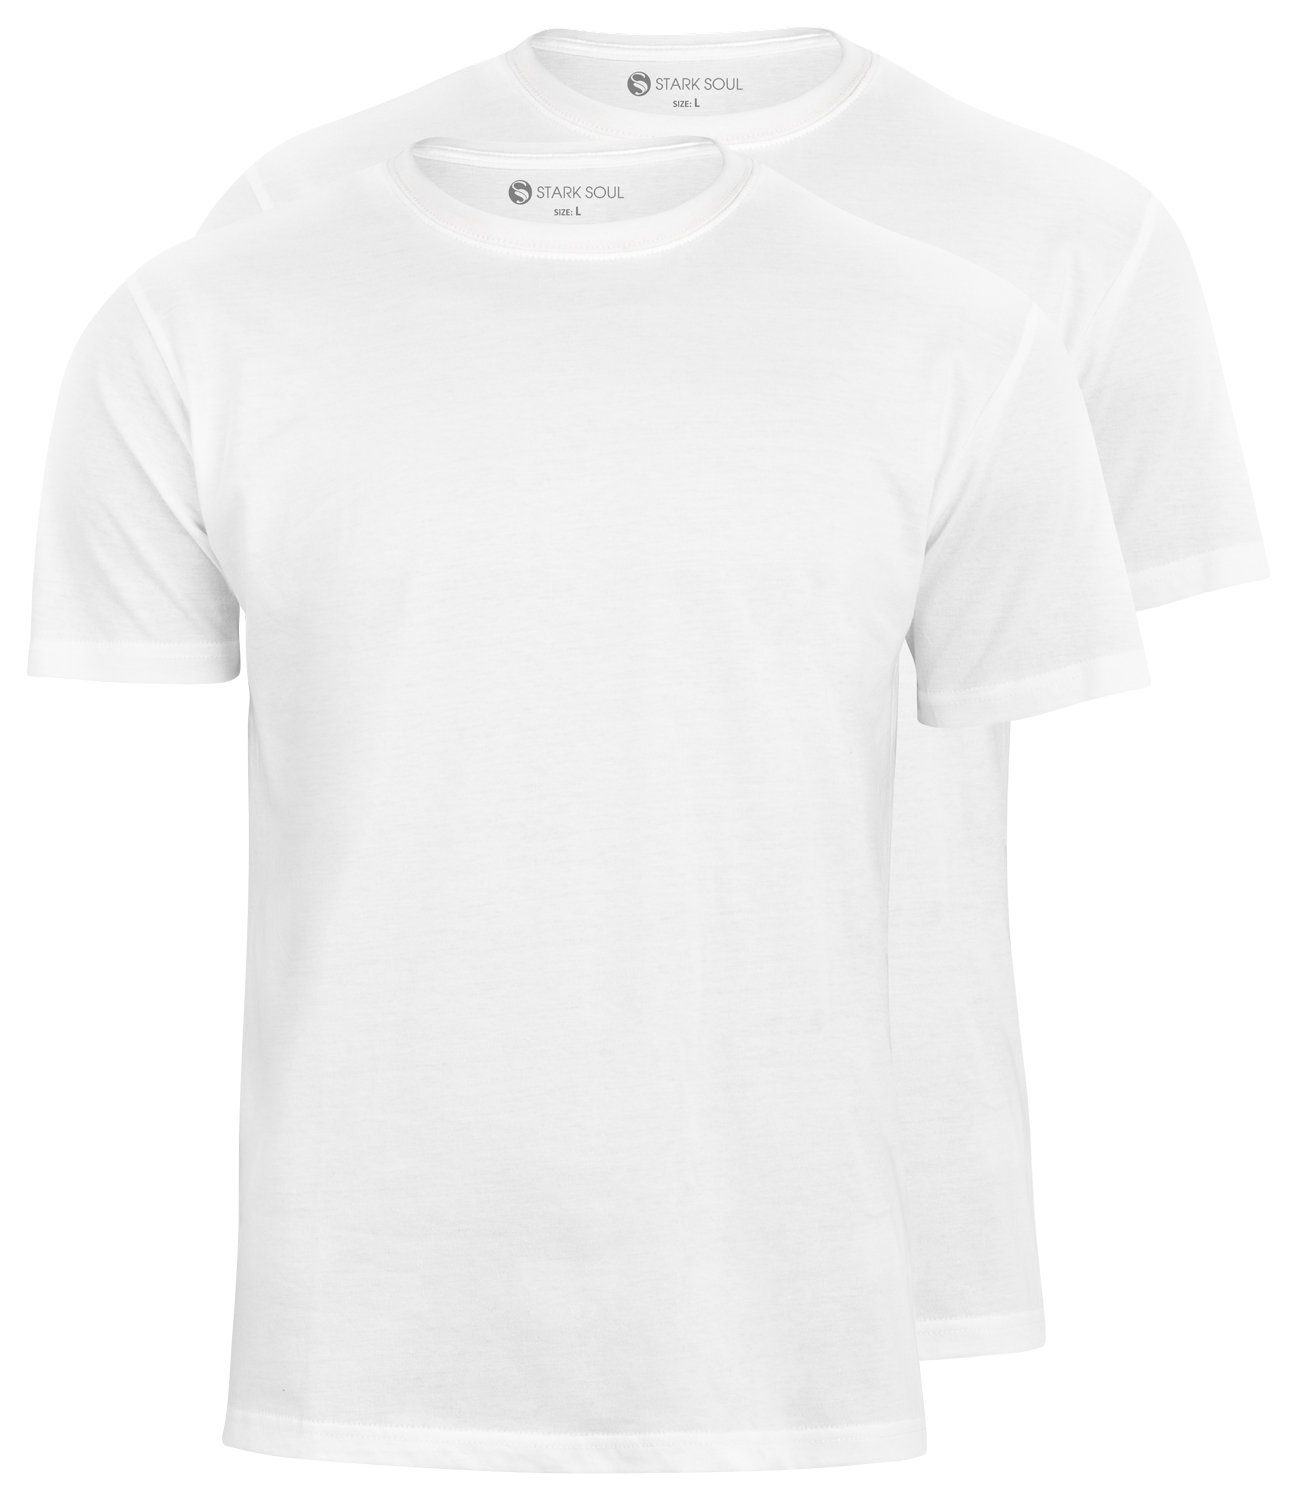 Soul® T-Shirt, Stark Pack 2er Weiß T-Shirt Baumwolle